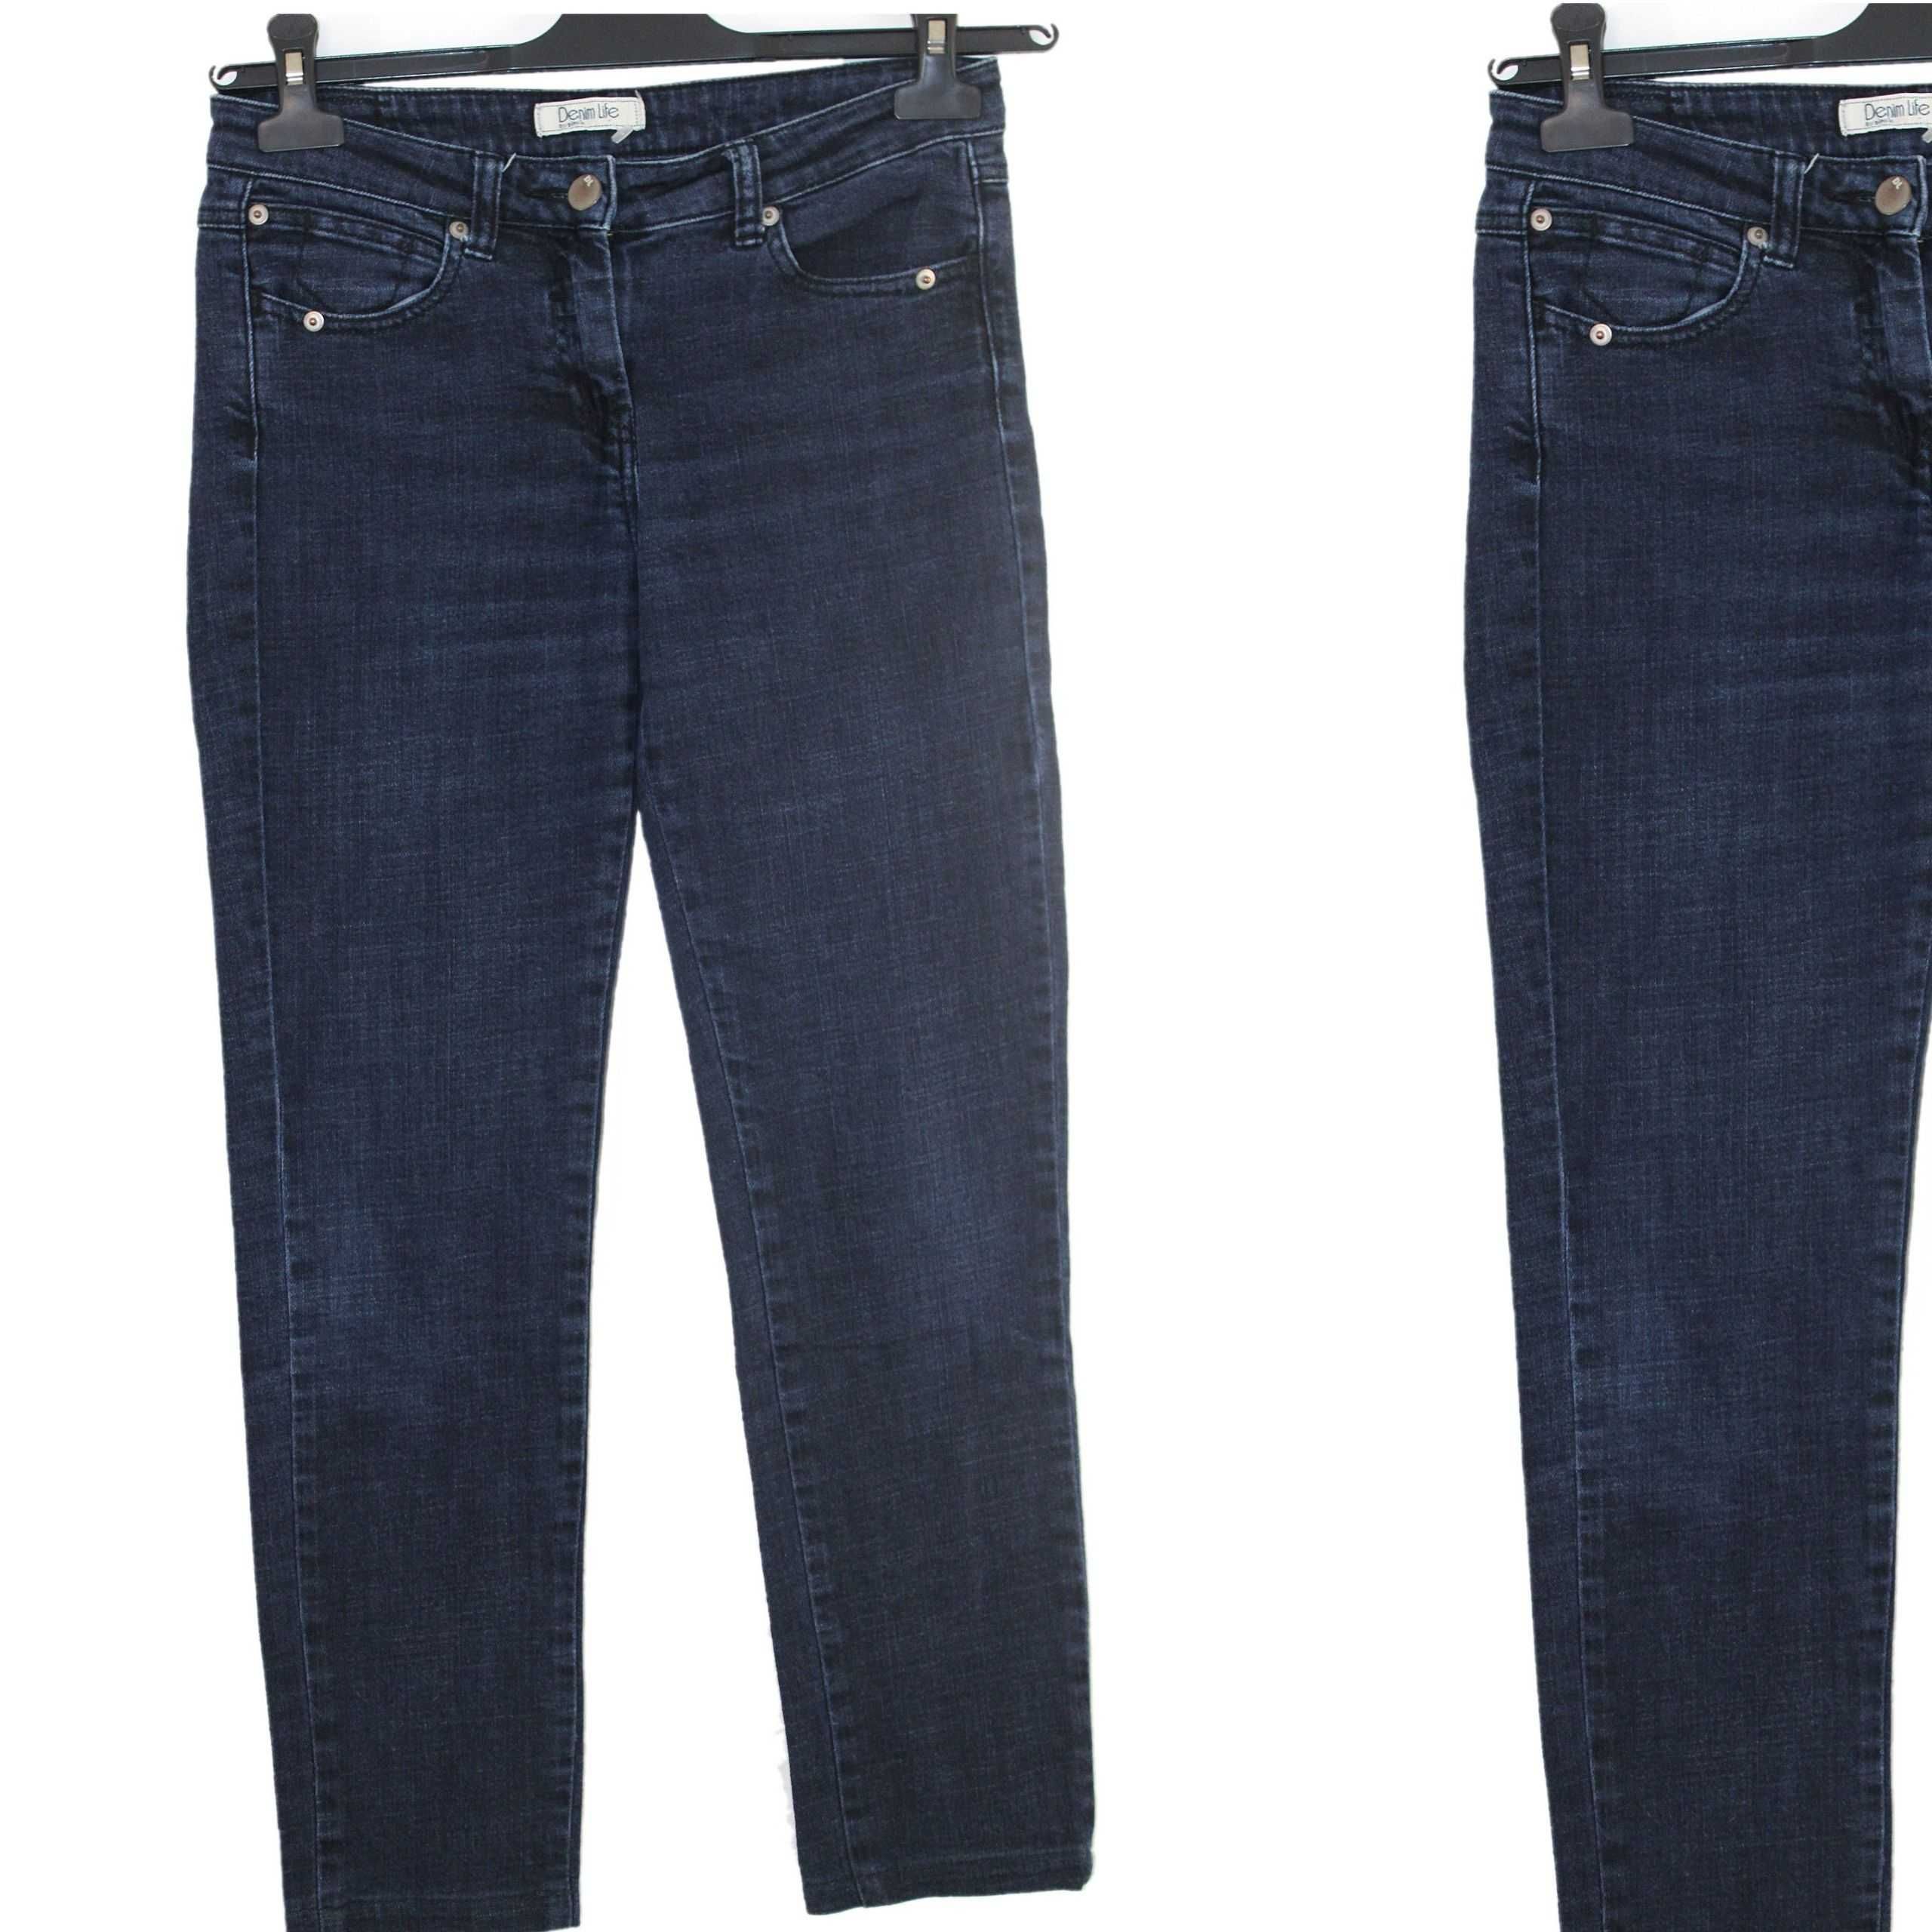 x4 PIMKIE Stylowe Granatowe Damskie Spodnie Jeans Skinny XS/S 34/36